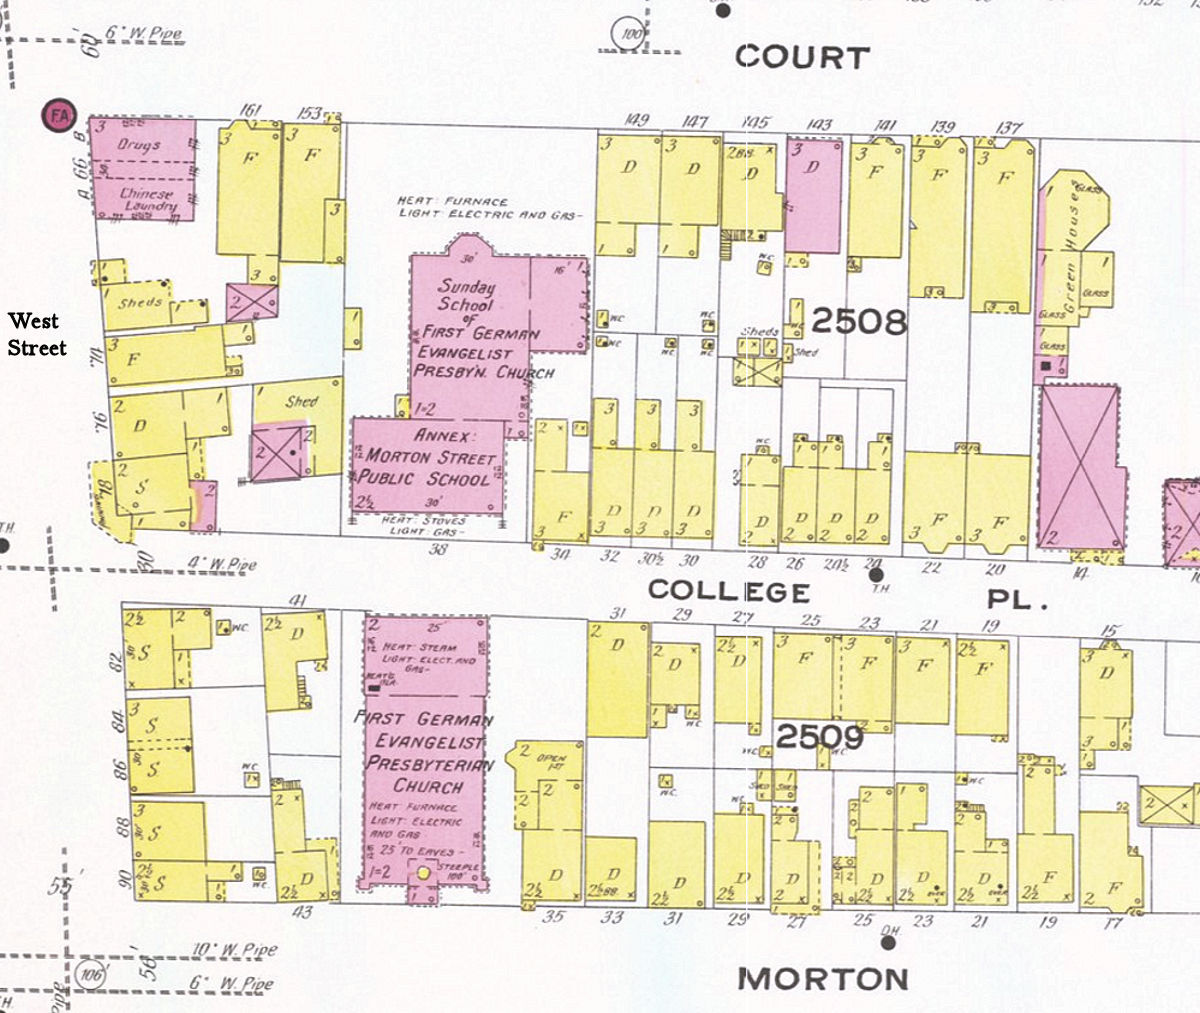 1908 map
Annex
